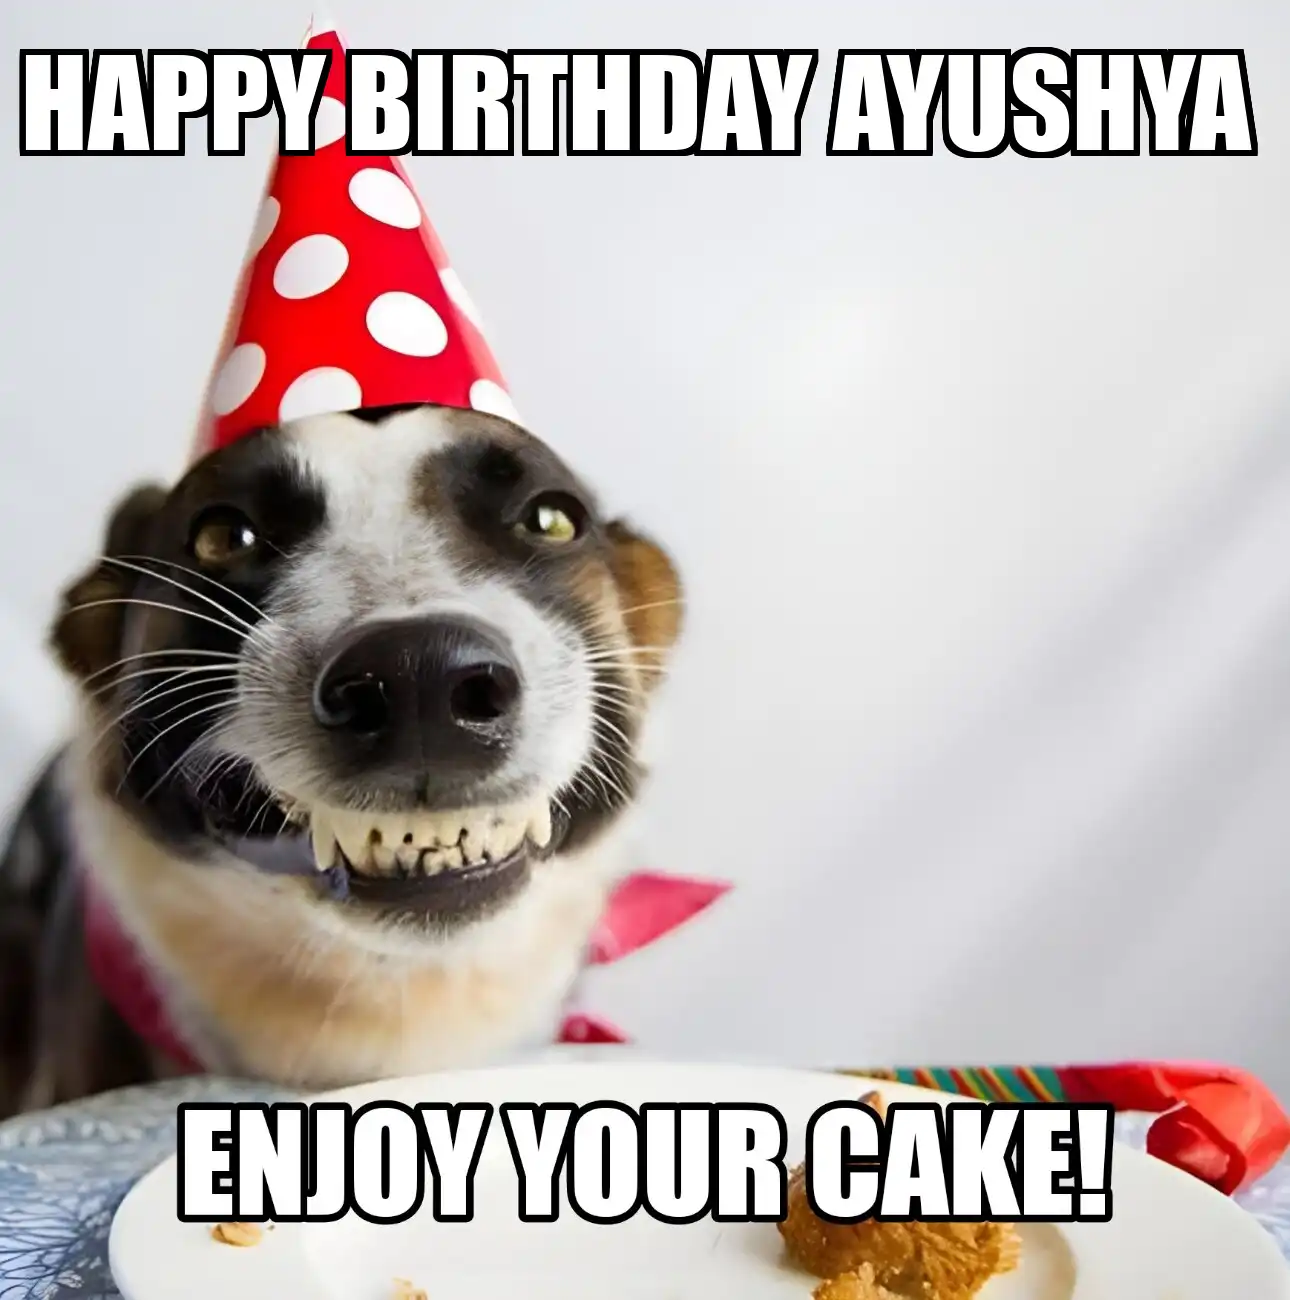 Happy Birthday Ayushya Enjoy Your Cake Dog Meme